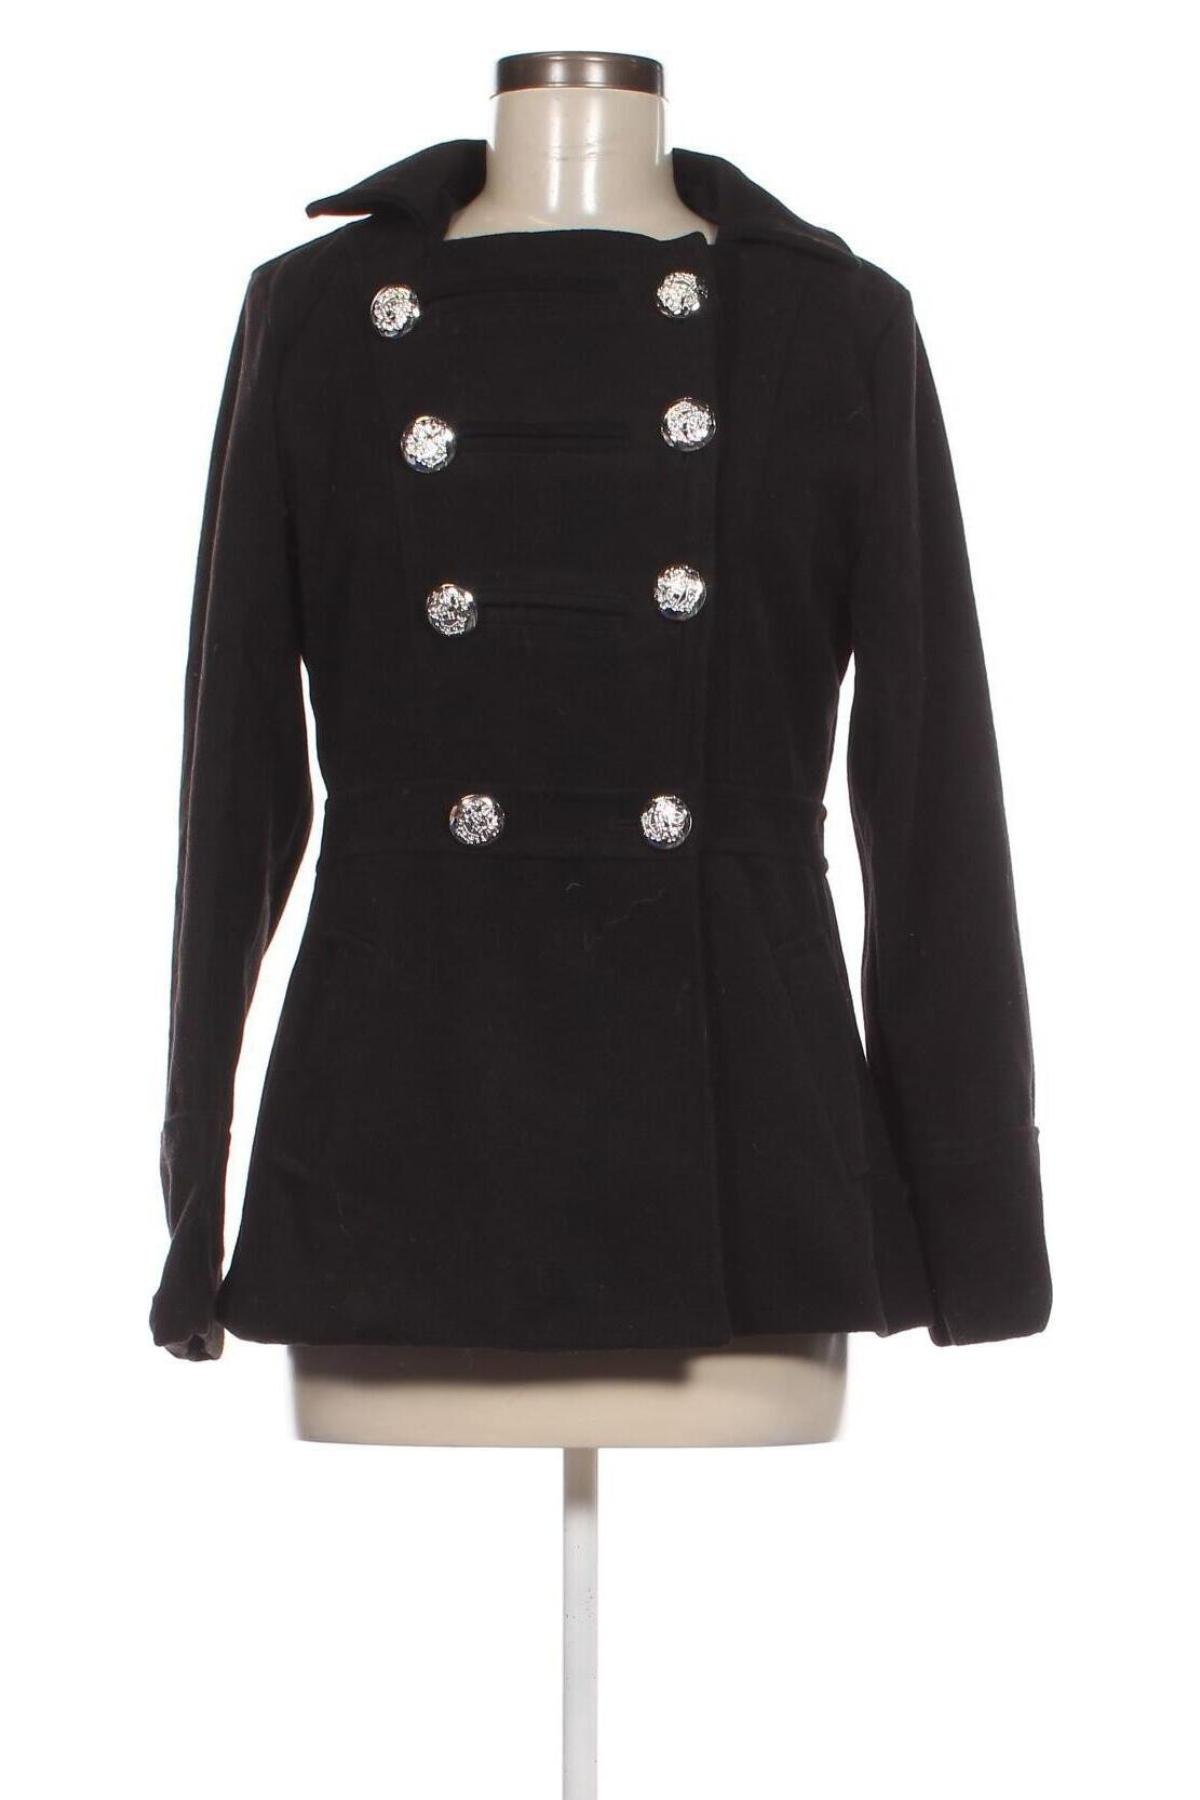 Γυναικείο παλτό Angvns, Μέγεθος M, Χρώμα Μαύρο, Τιμή 18,97 €